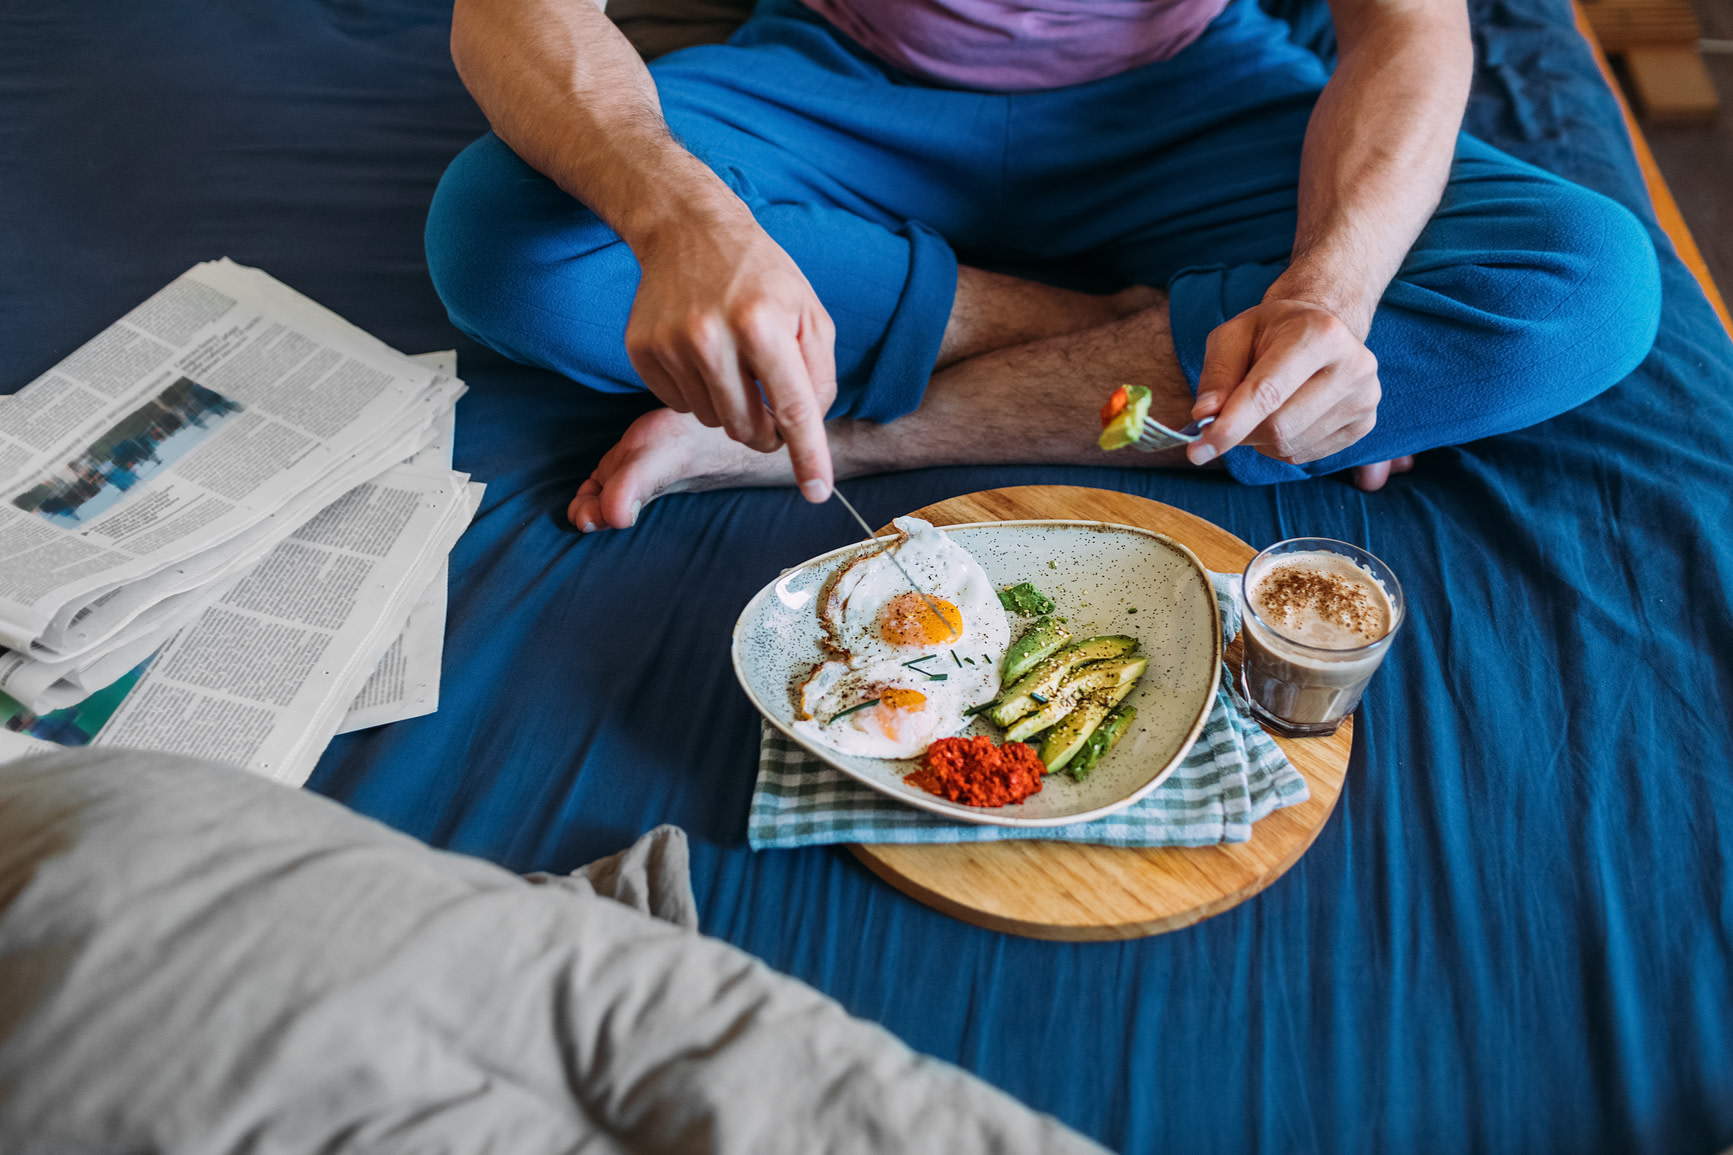 Breakfast in bed — eggs, avocado